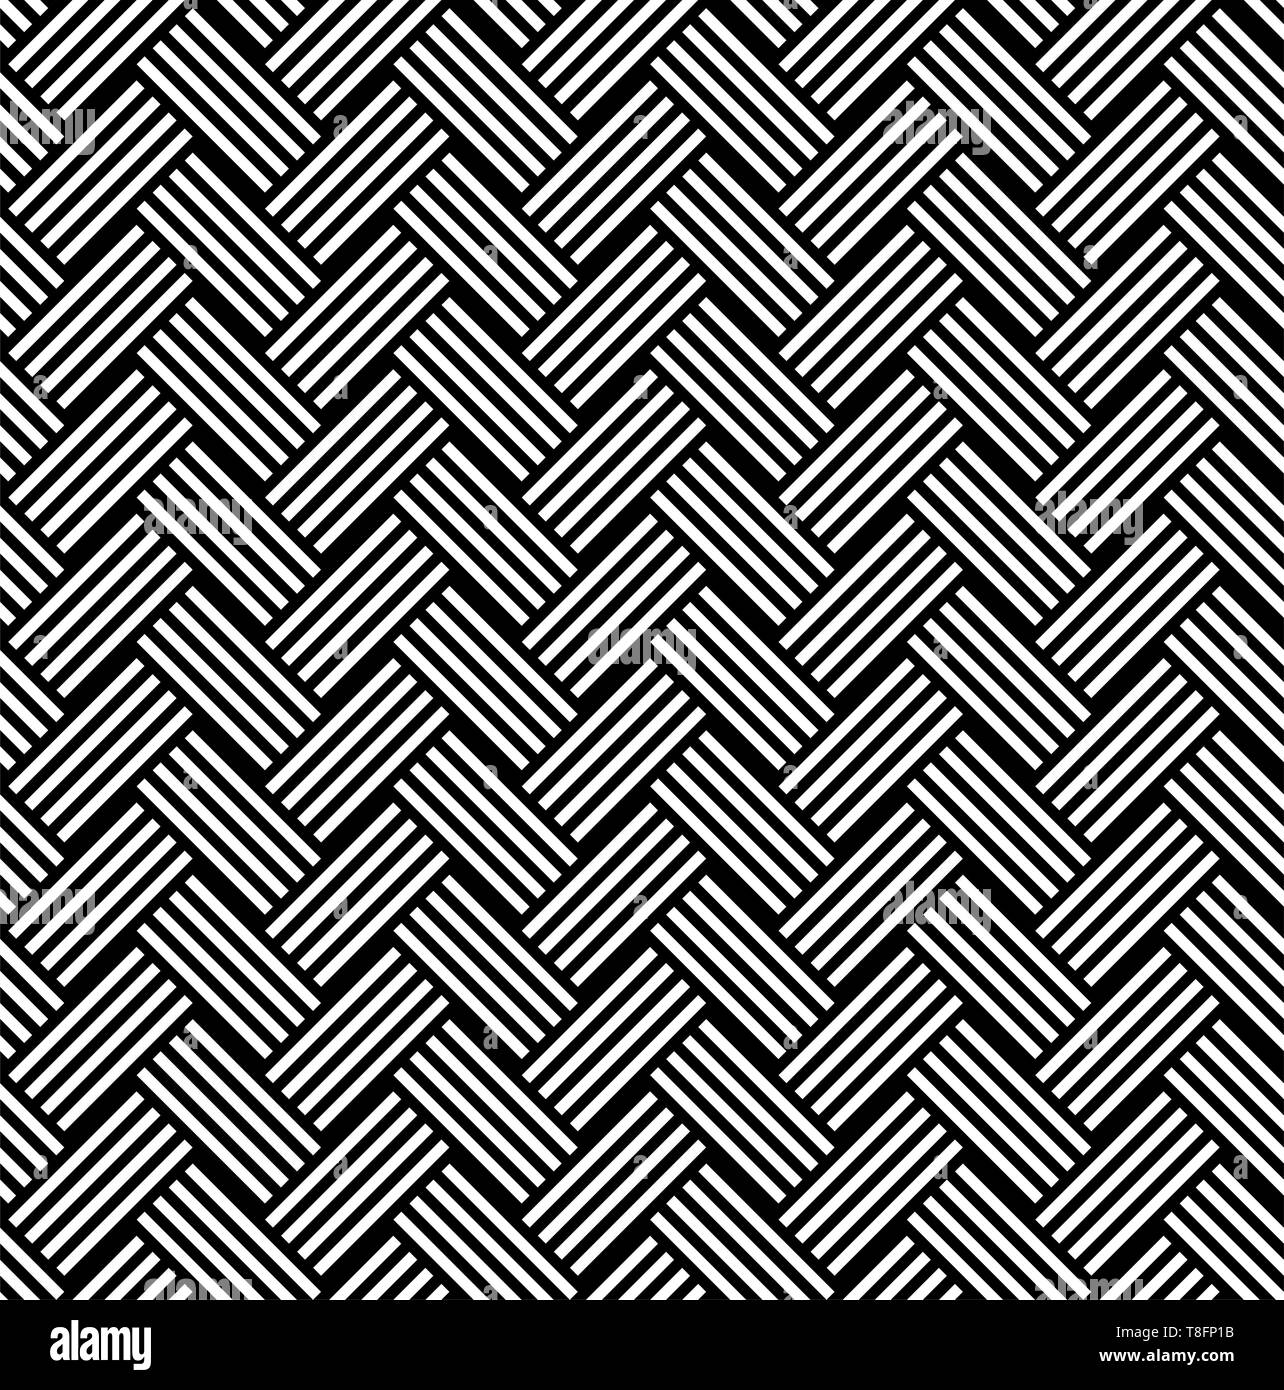 Nahtlose Muster von schwarz weiss diagonal gestreiften lineare Zöpfe. Geometrische gestreifte ornament Hintergrund. Drucken Karte, Tuch, Bekleidung, Hemden, Socken, Sho Stock Vektor